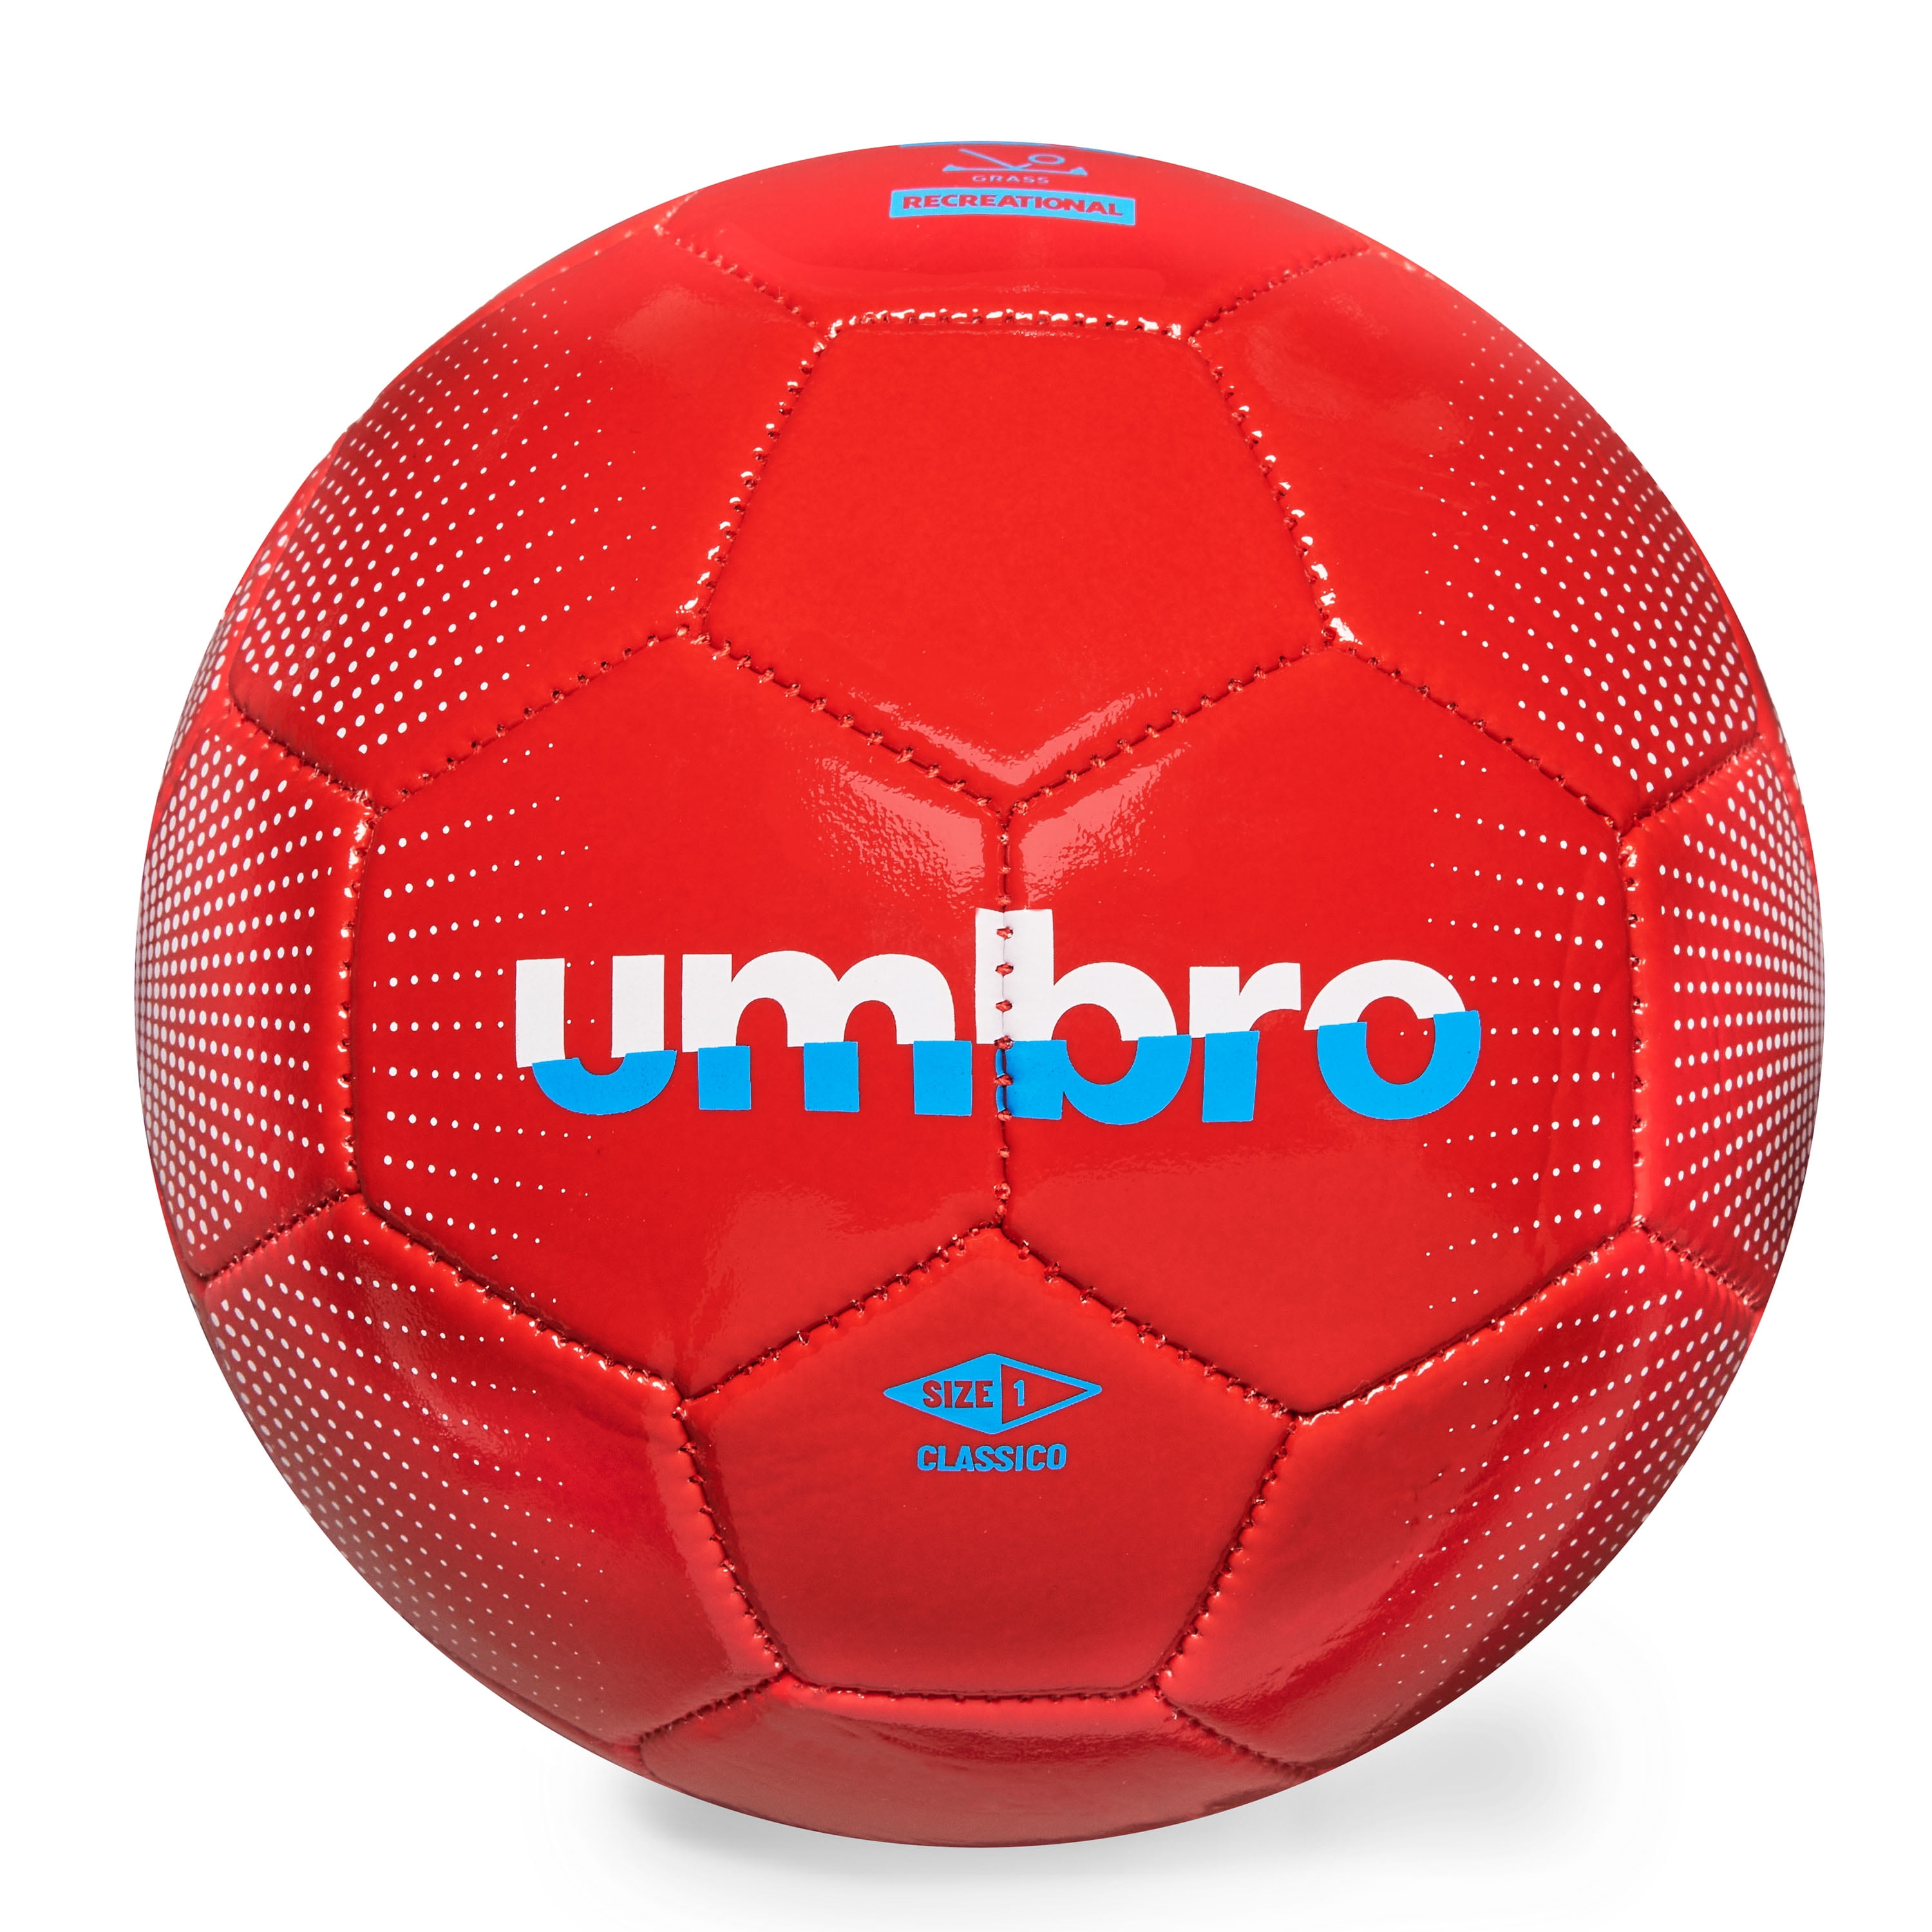 Umbro Classico Soccer Ball, Size 1 - Walmart.com - Walmart.com